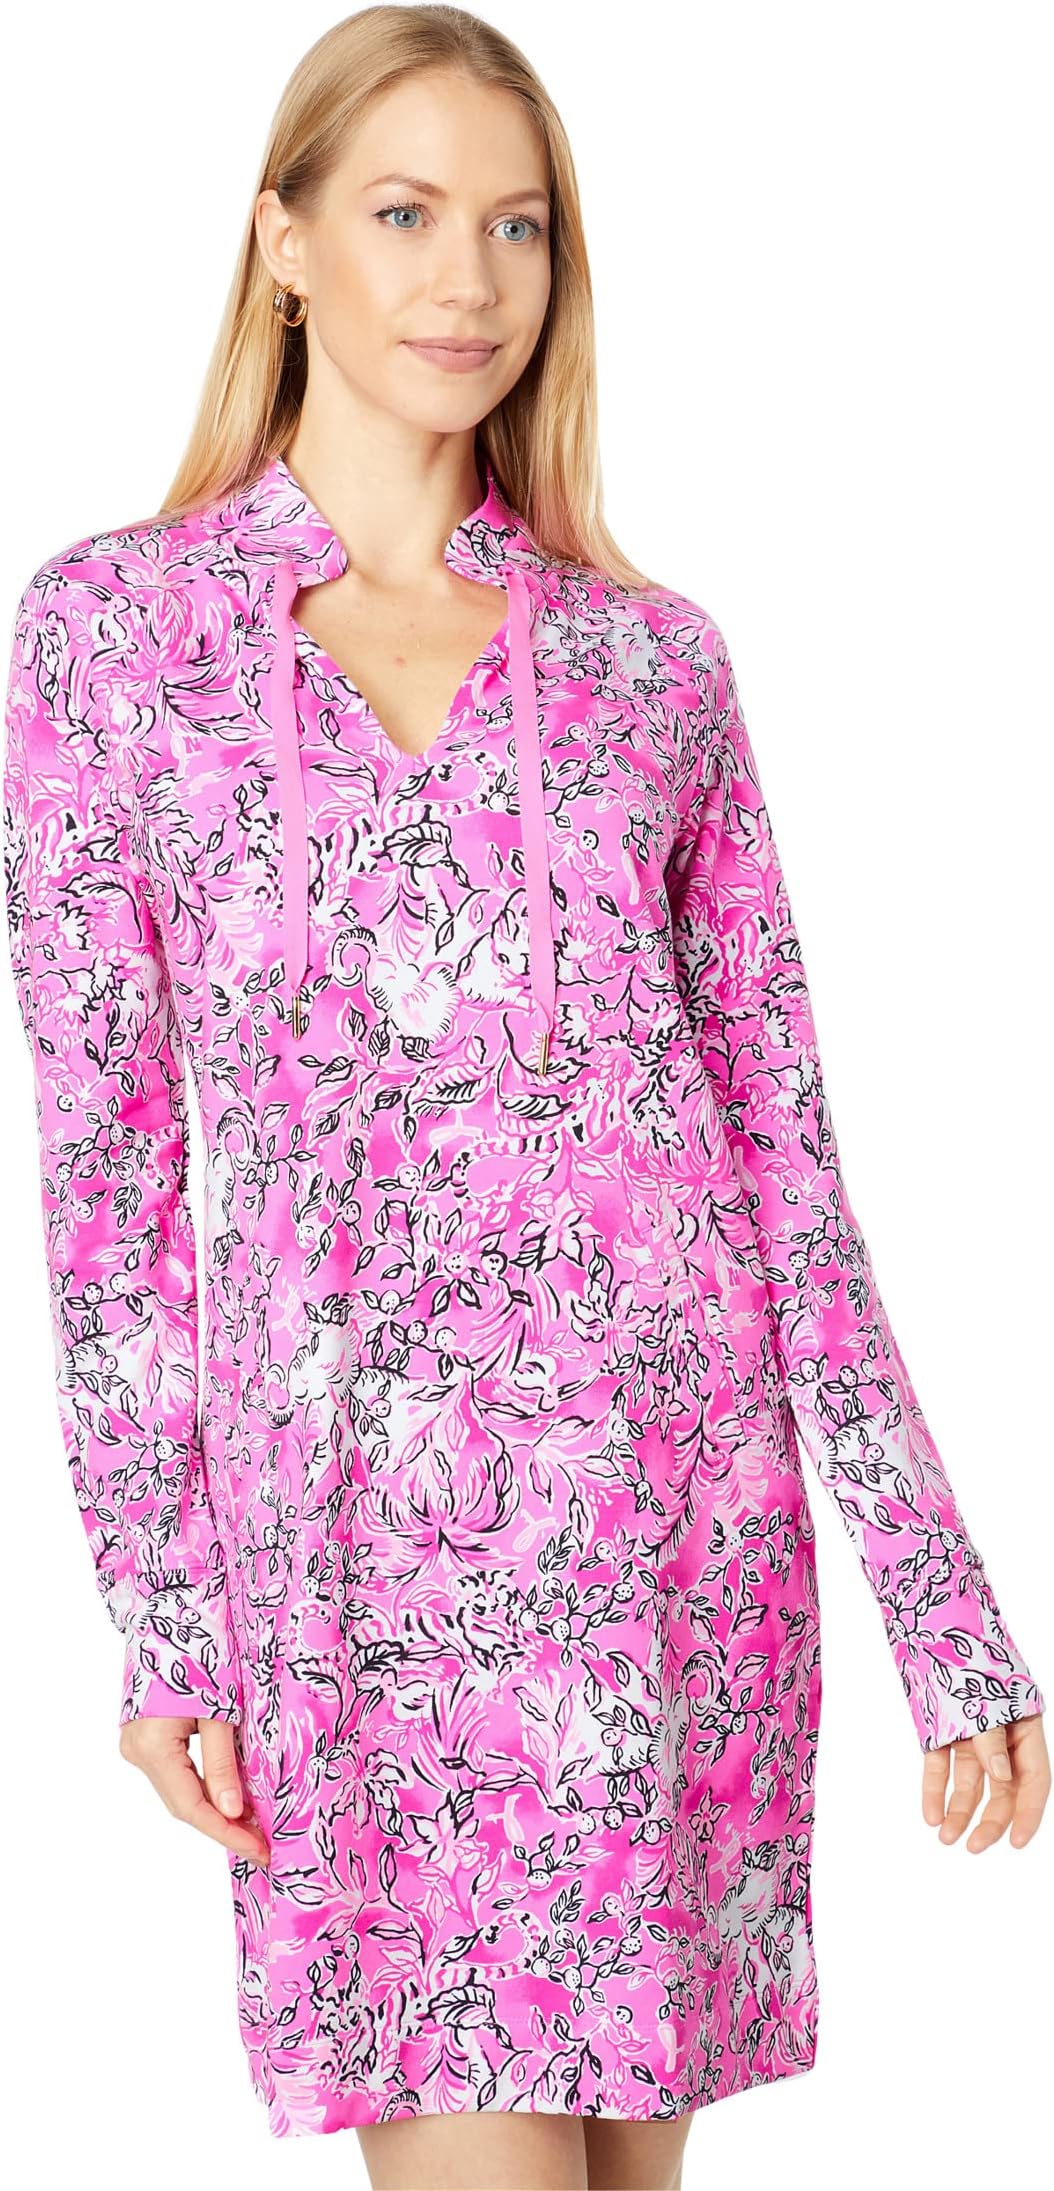 Платье Cassi UPF 50+ Lilly Pulitzer, цвет Plumeria Pink/Purposefully Pink